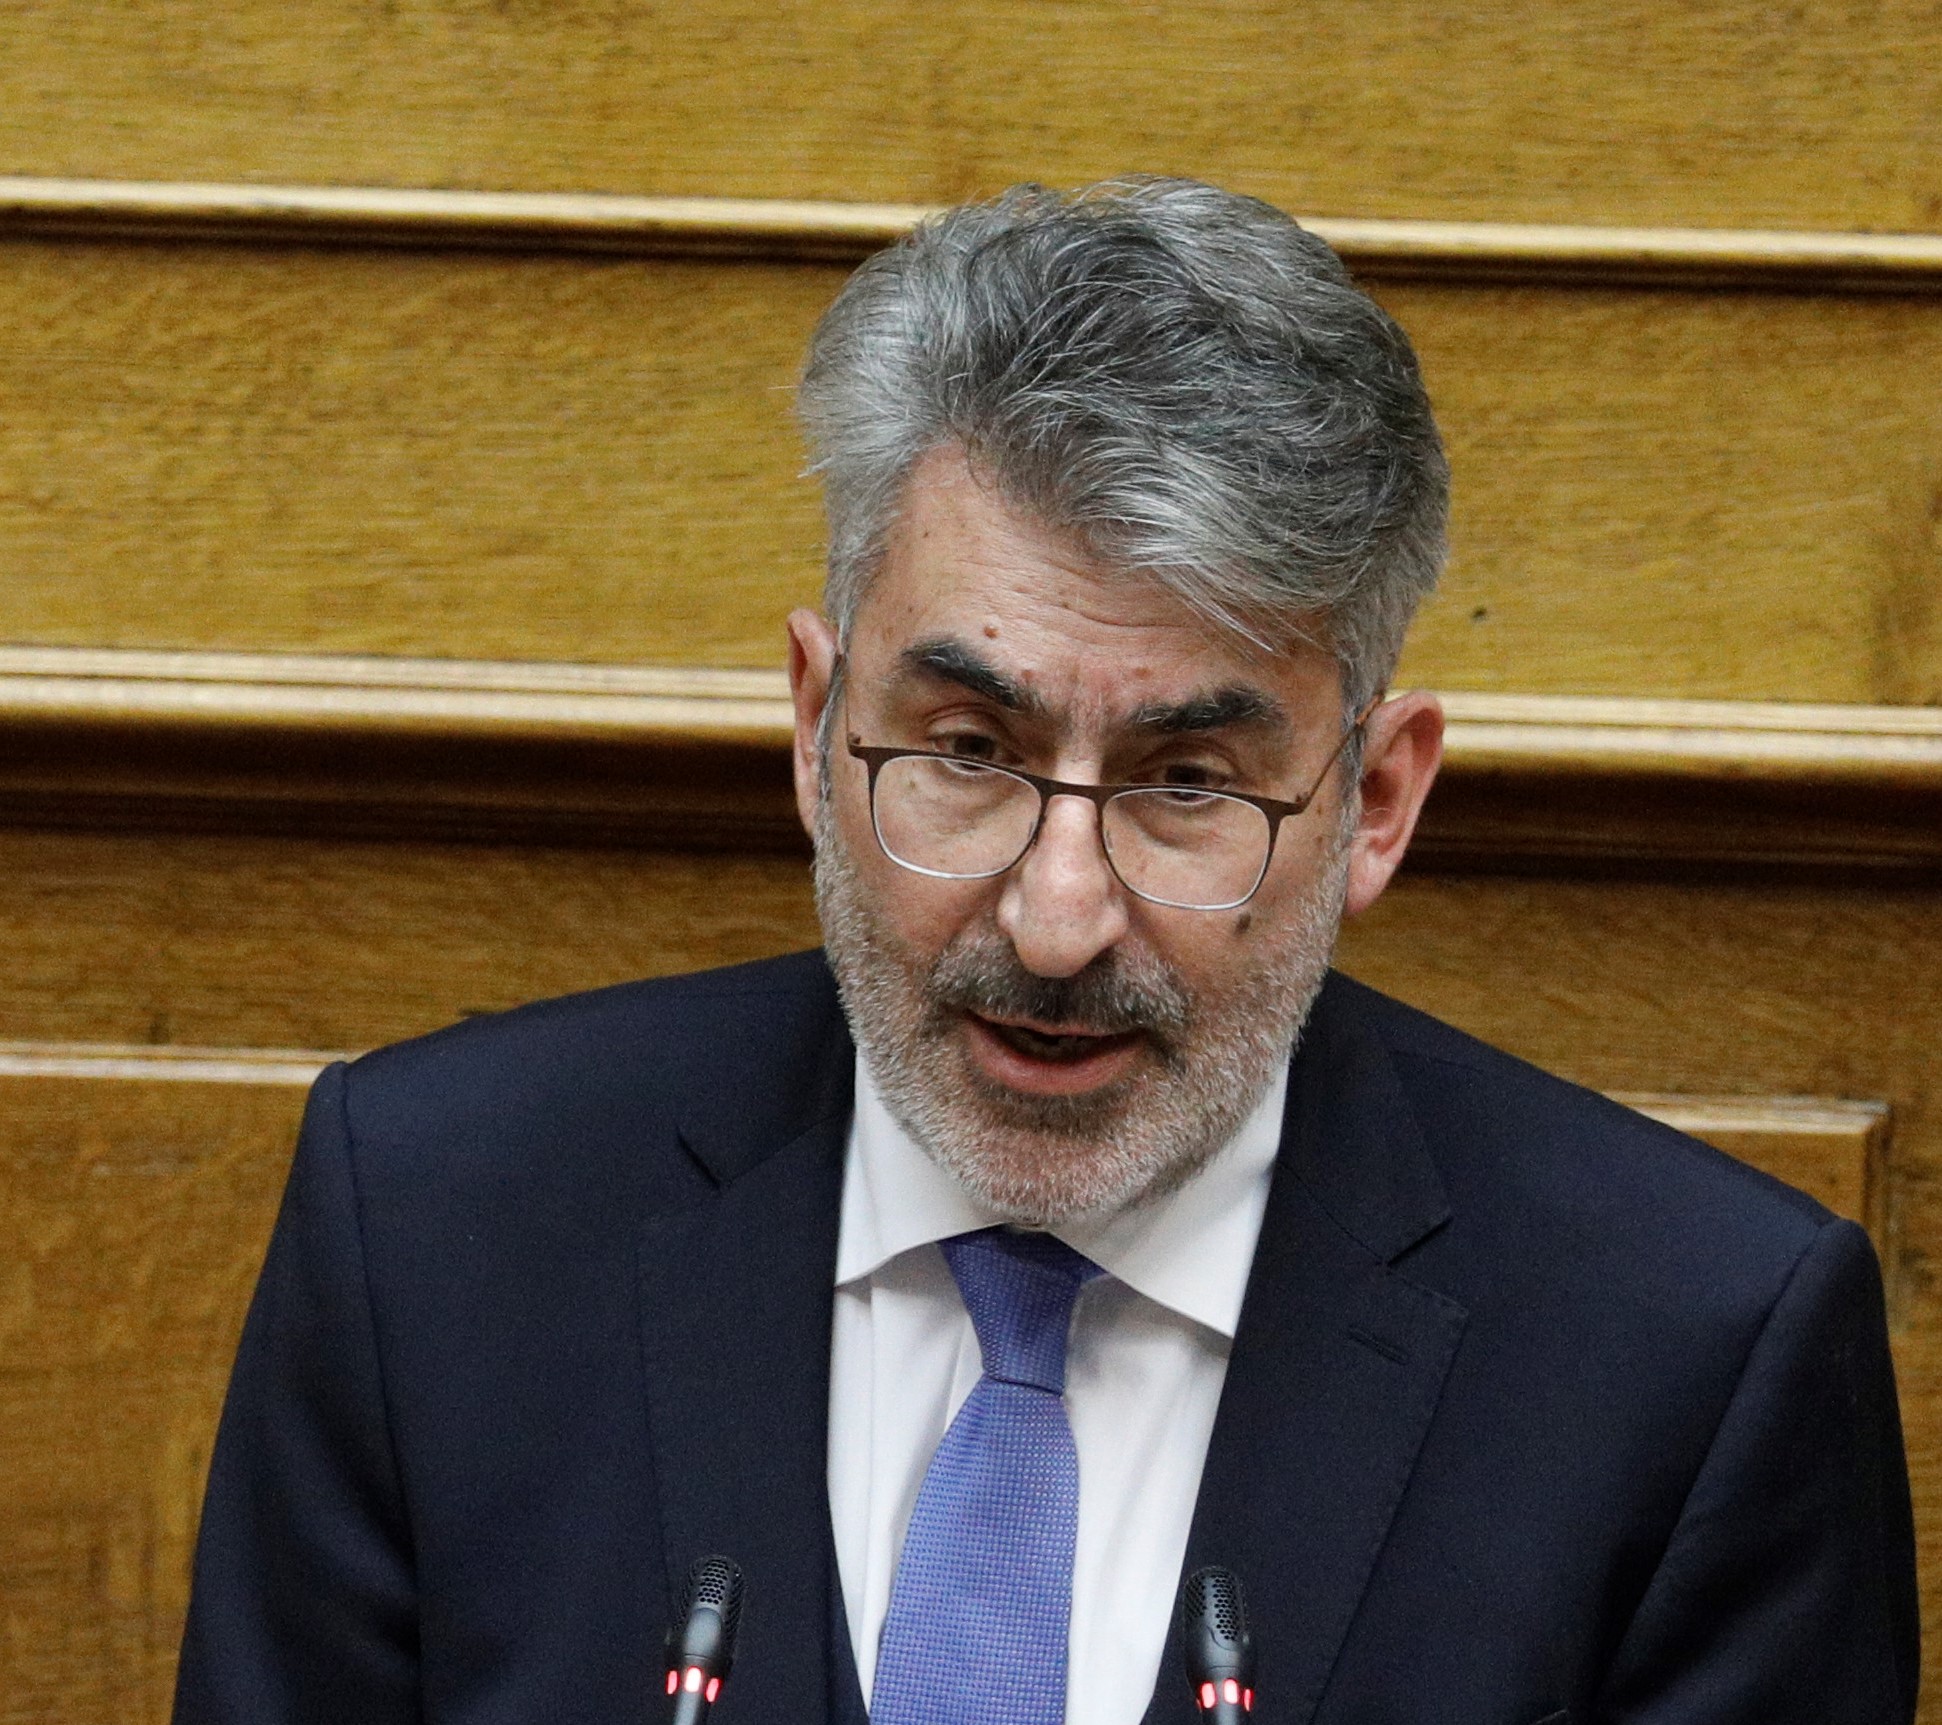 Θ. Ξανθόπουλος: Αρνείται η κυβέρνηση να αναστείλει τις ασφυκτικές προθεσμίες επαναπροσδιορισμού των εκκρεμών υποθέσεων του Ν. Κατσέλη, όσο διαρκεί η πανδημία-Κινδυνος για την πρώτη κατοικία χιλιάδων οφειλετών